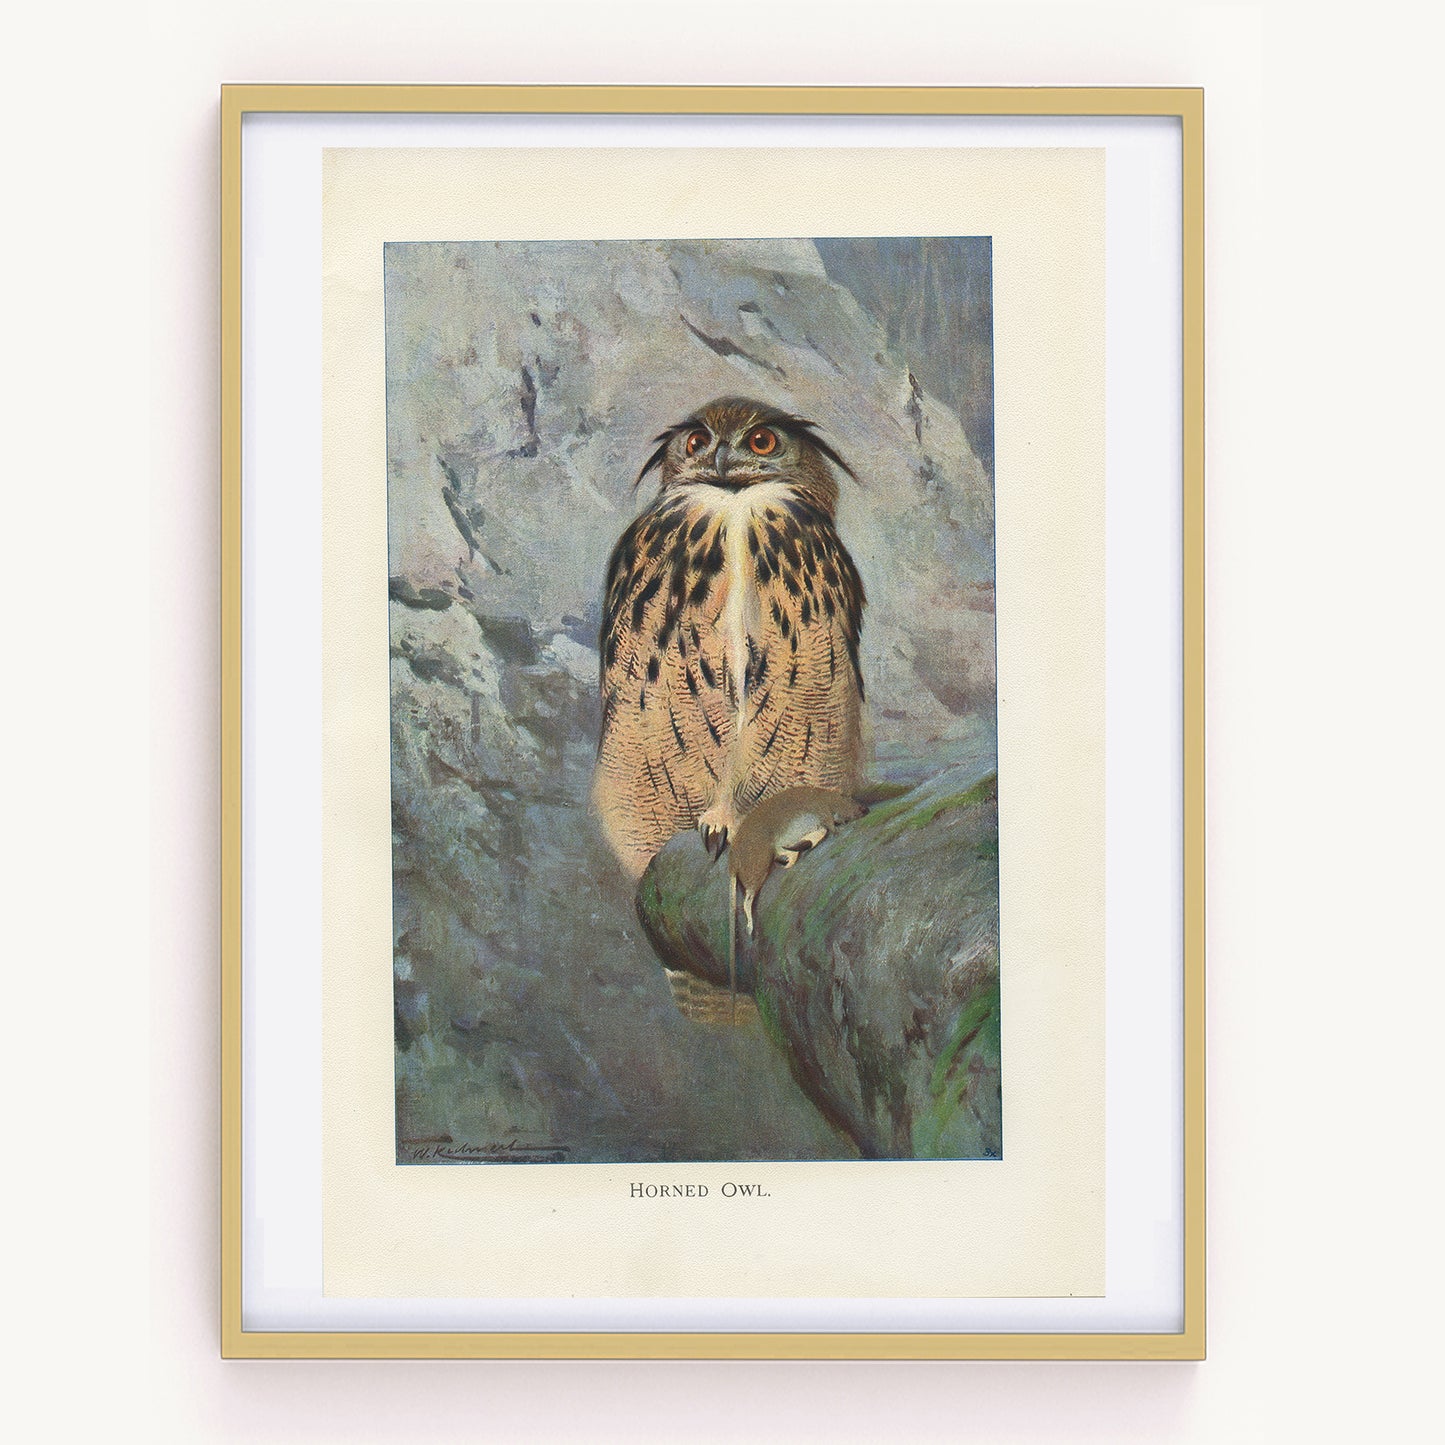 1916 Horned Owl Print by Lydekker